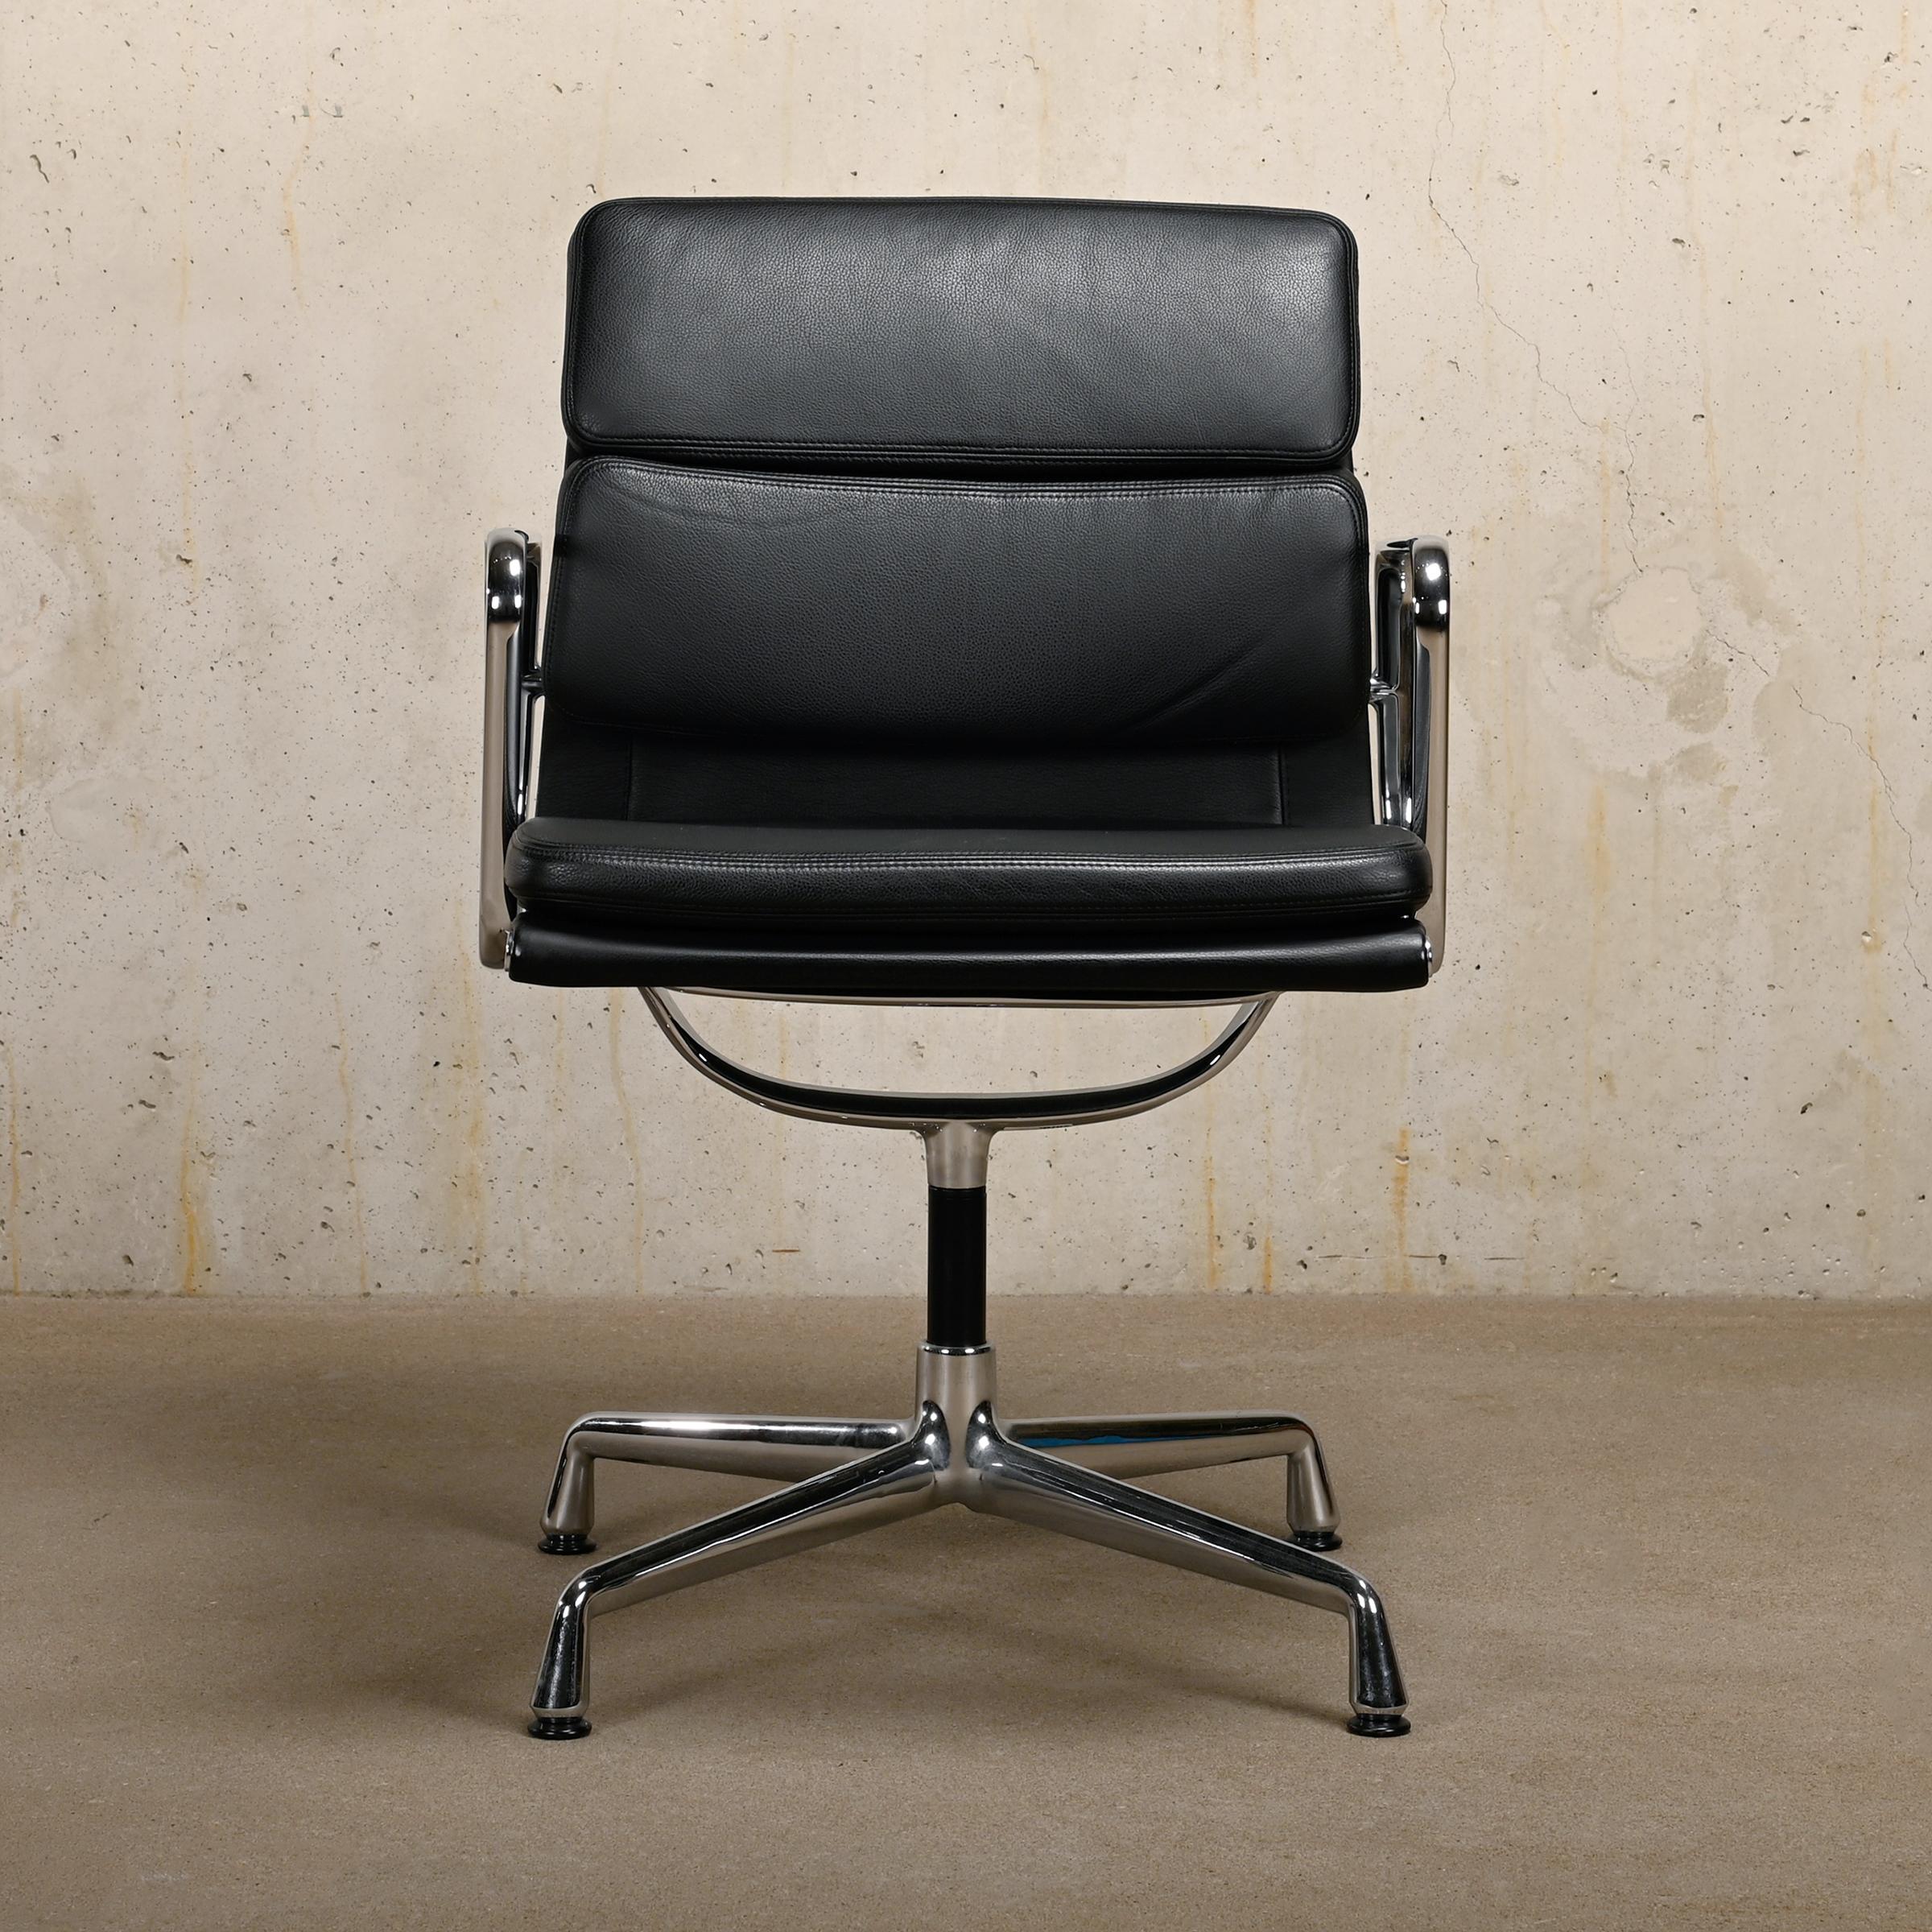 Magnifique chaise de salle à manger ou de conférence EA208 appartenant à la série iconique Aluminium Series conçue par Charles & Ray Eames pour Herman Miller (US) / Vitra (EU). Les coussins en cuir souple et le mécanisme de pivotement garantissent